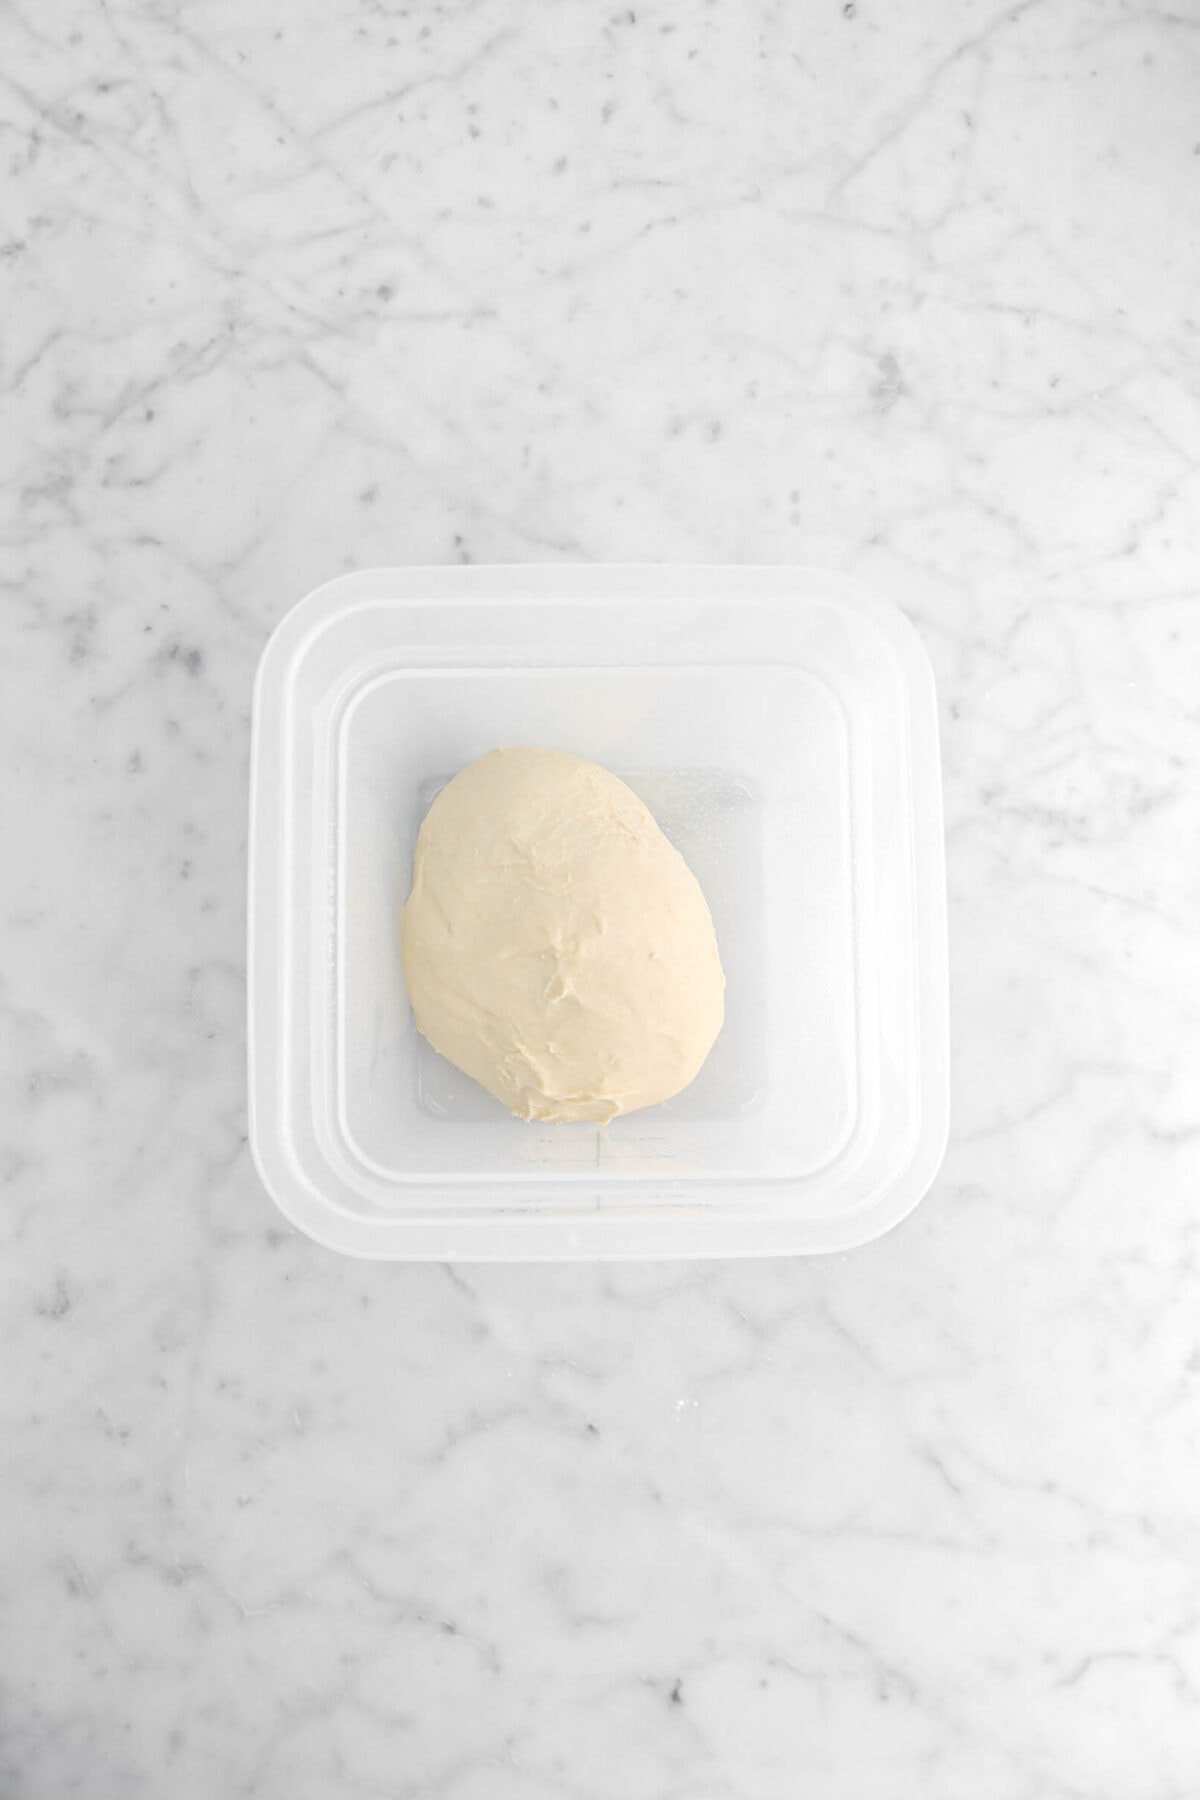 dough in square plastic container.